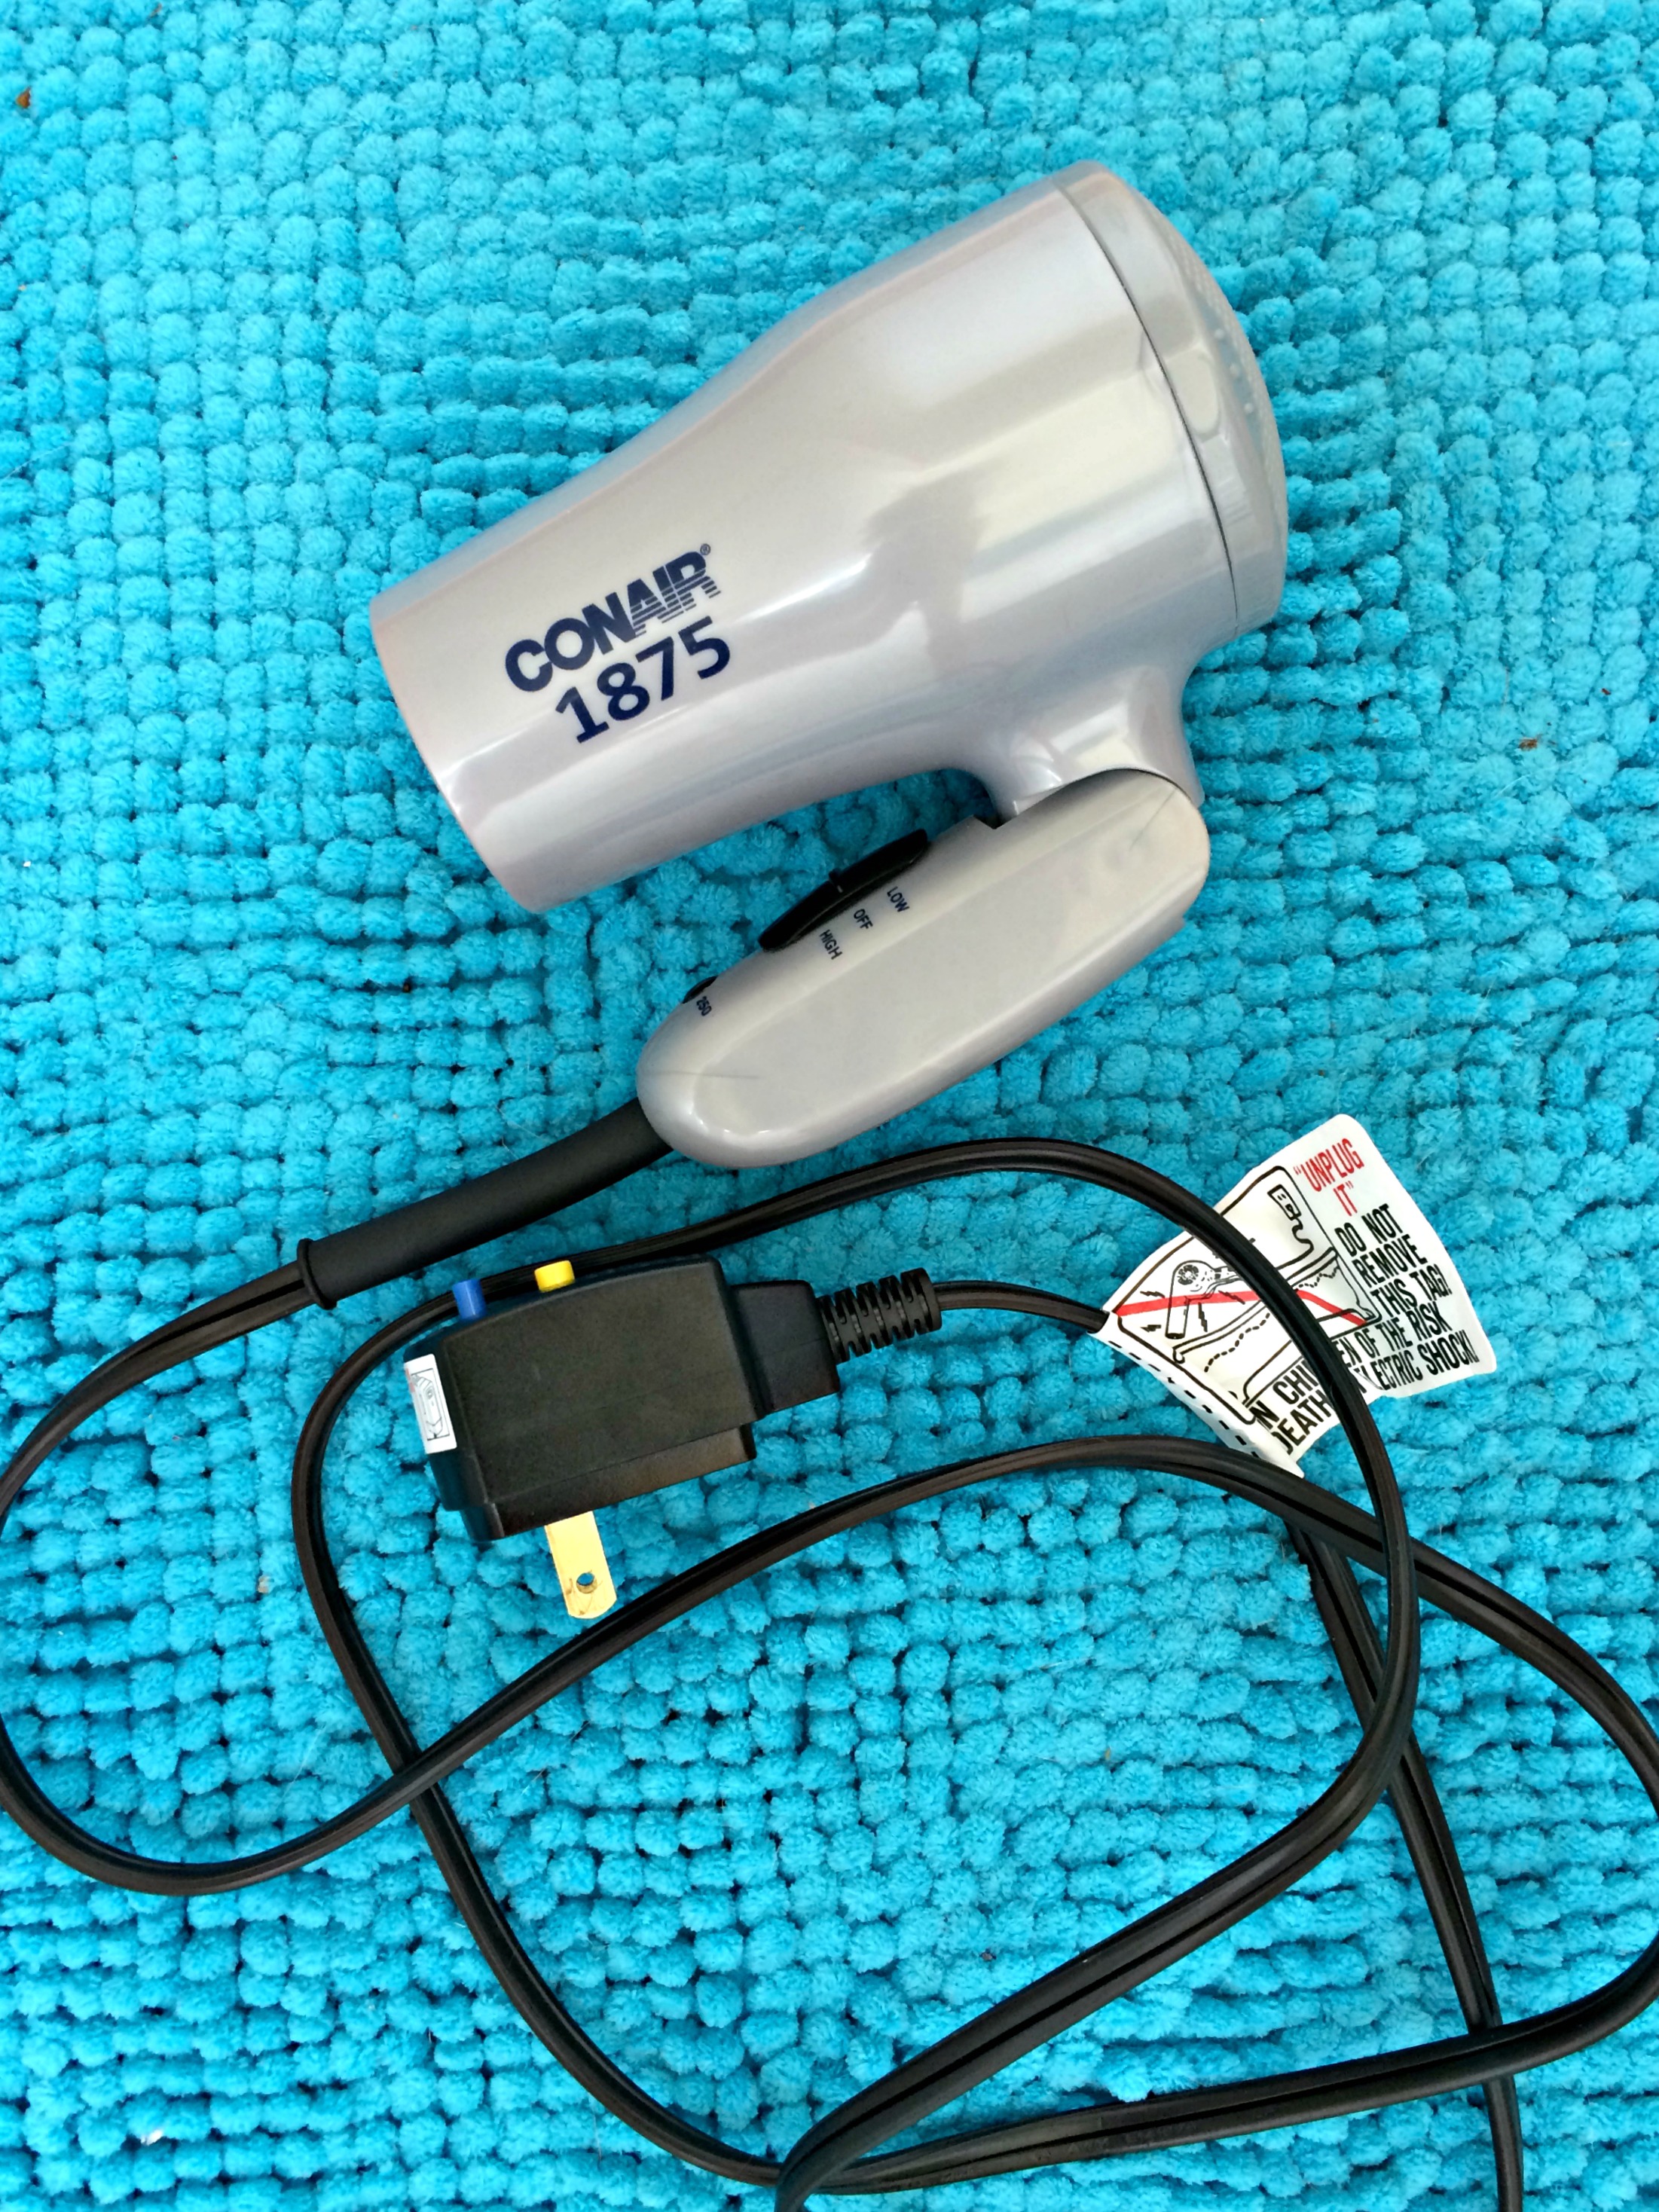 Conair travel hair dryer